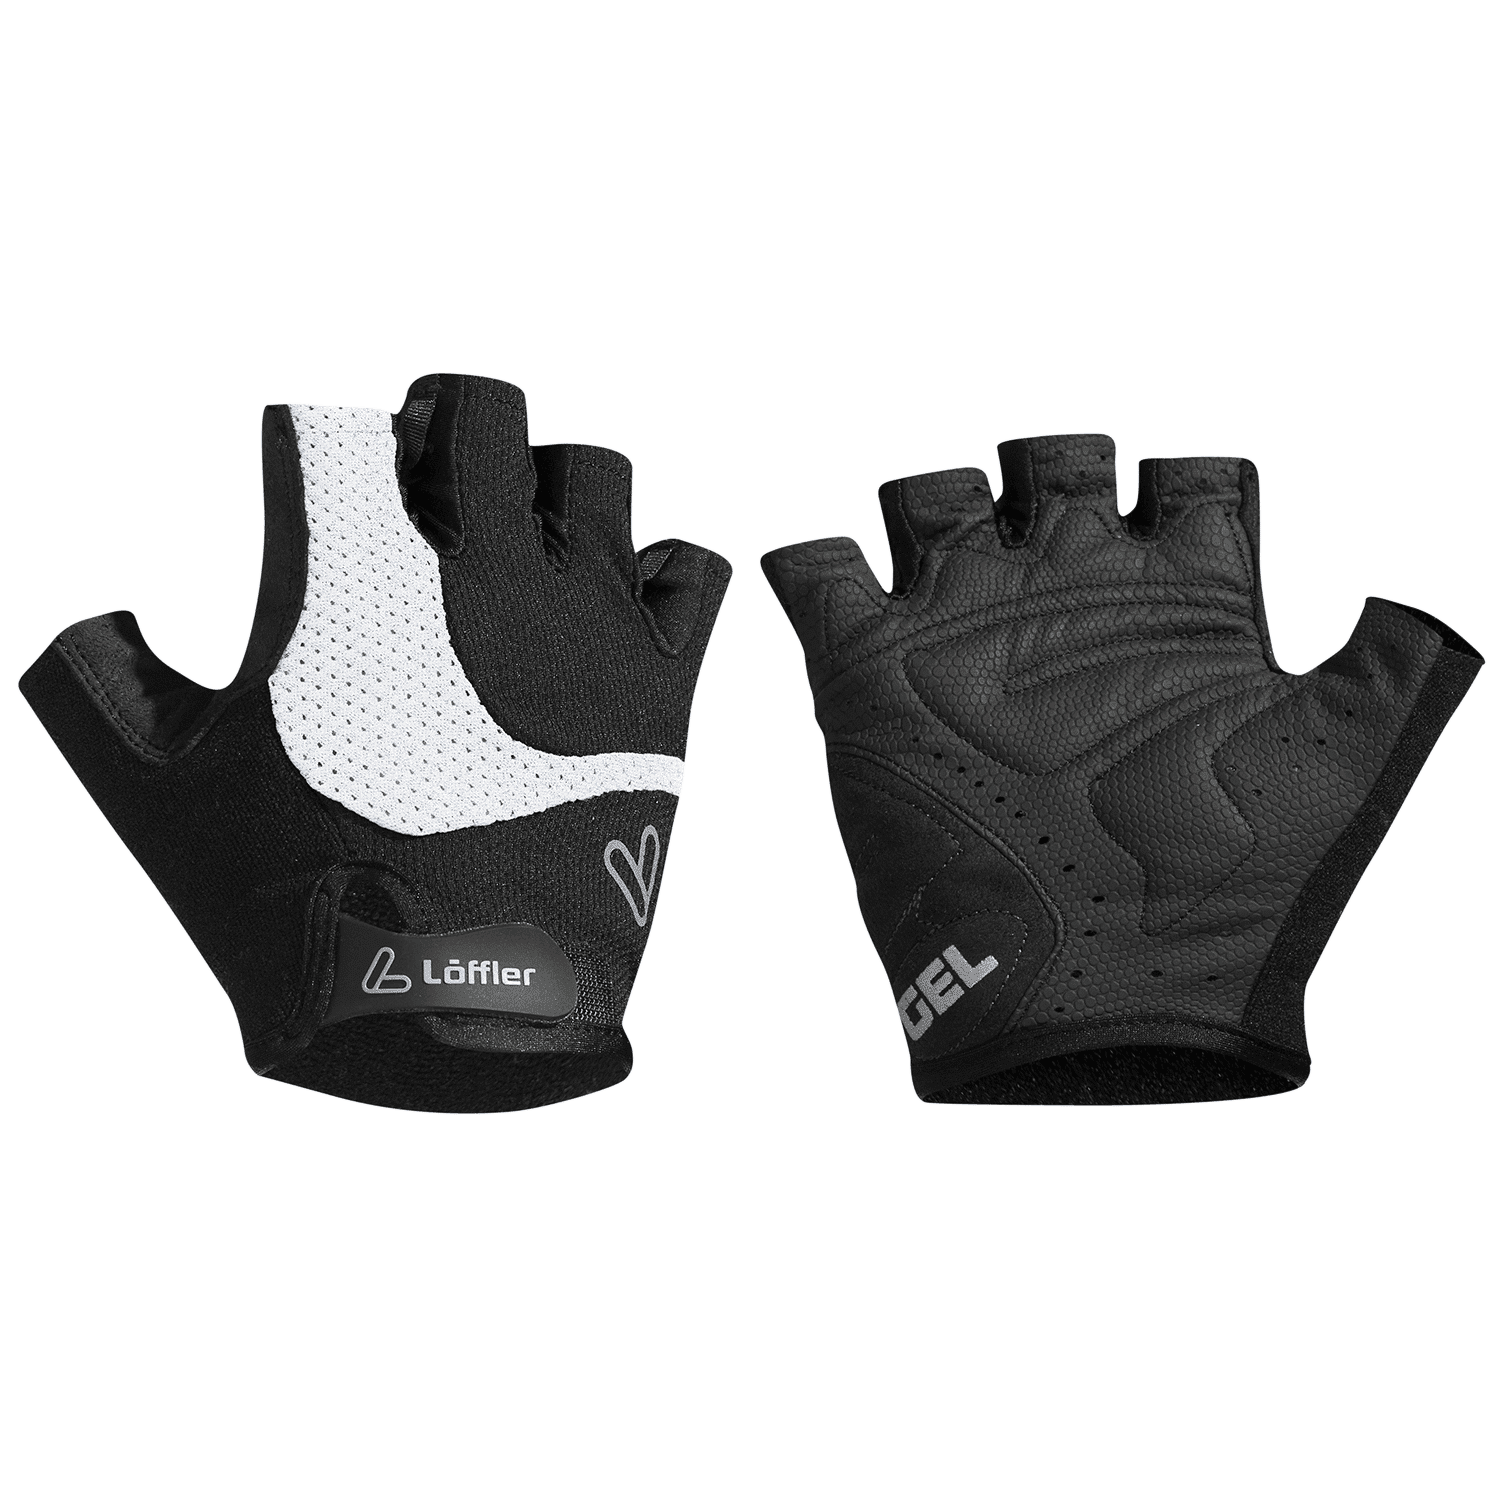 Loeffler Bike Gloves Gel - Fietshandschoenen